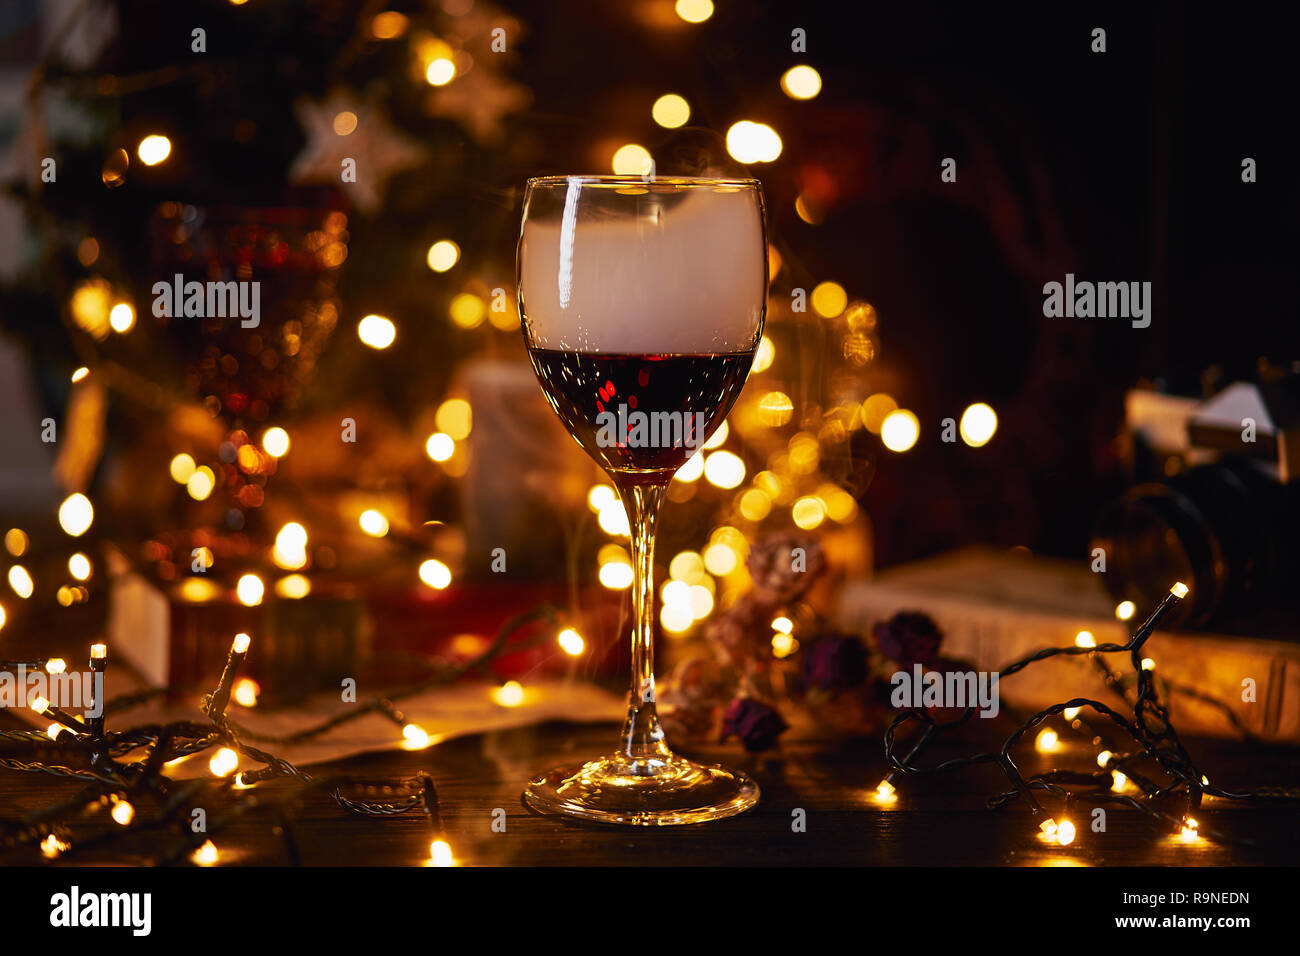 Festliche Atmosphäre in den mit einem Glas Rotwein. Rauch kriechen in Clubs in Glas und Licht bokeh Hintergrund. Weihnachten, Silvester oder Sa Stockfotografie - Alamy